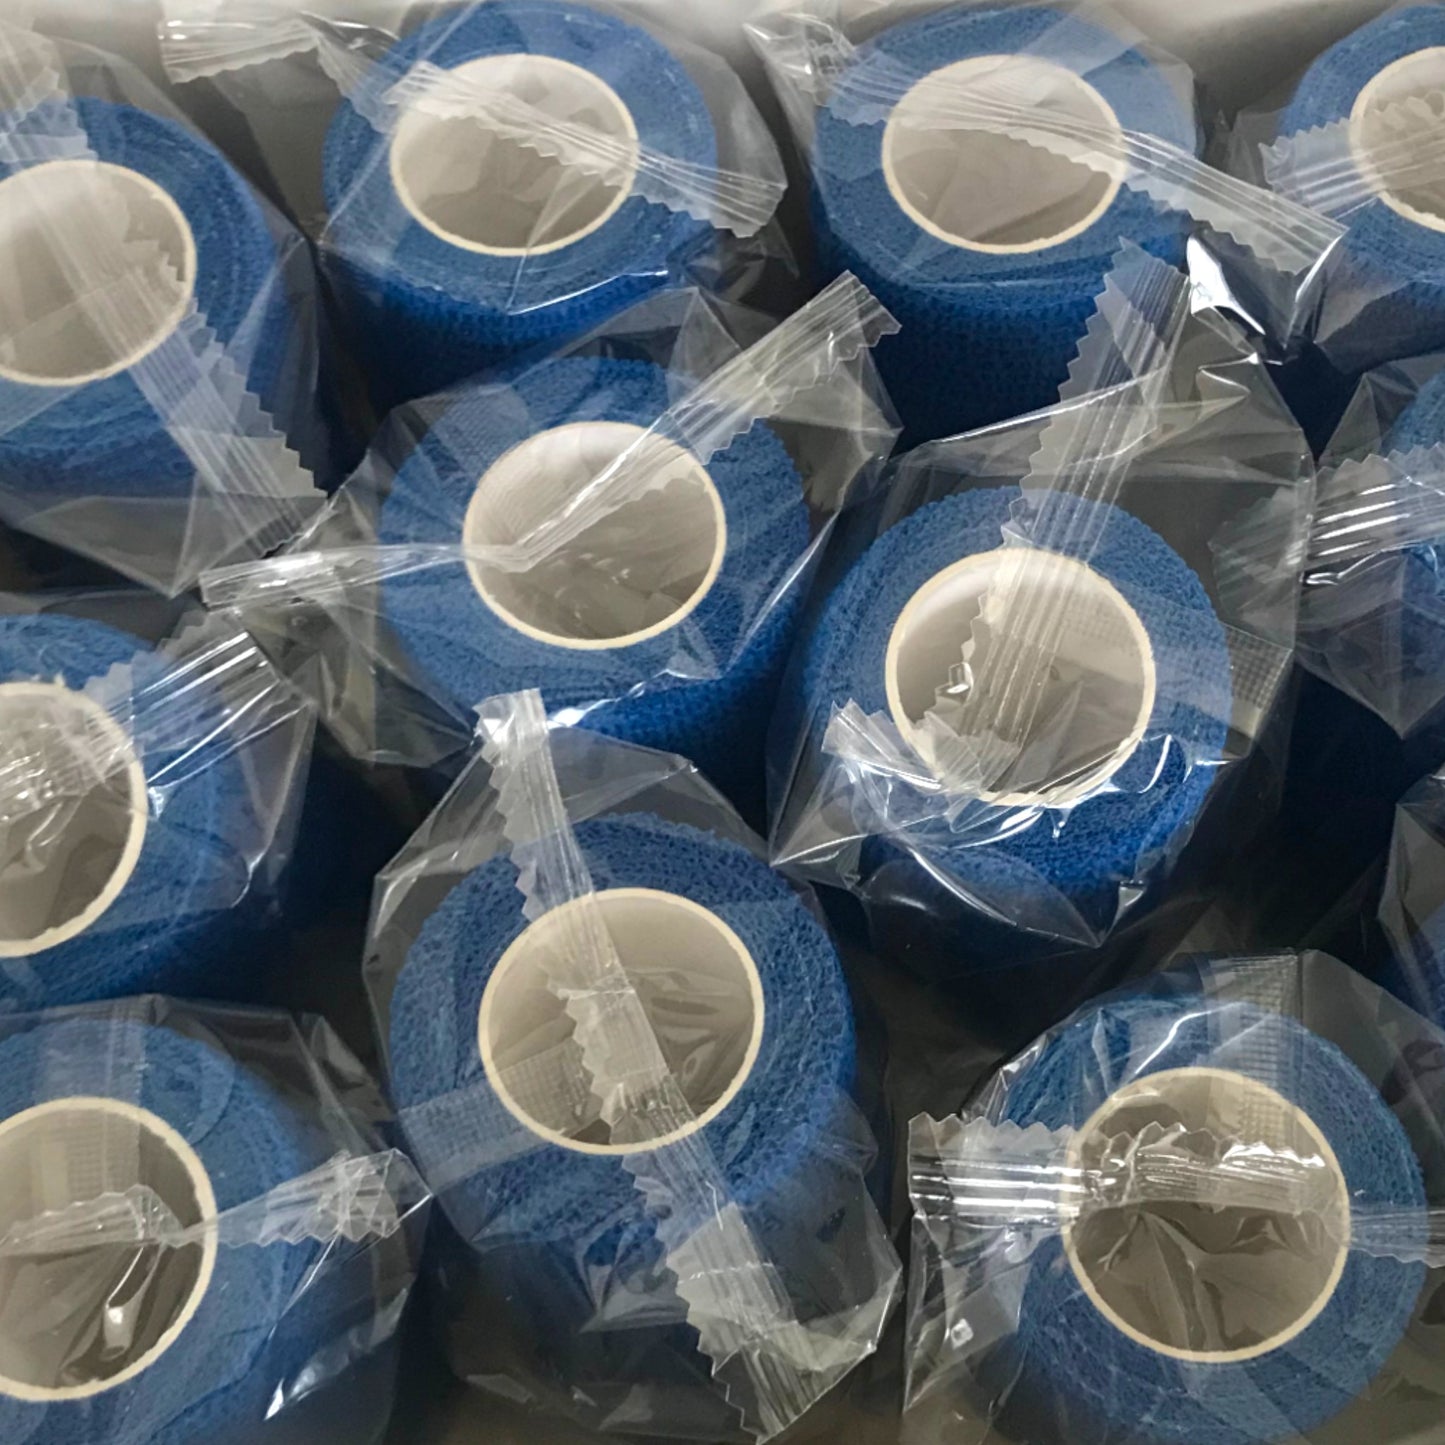 Zuverlässiger selbstklebender elastischer Verband - 10 cm x 4,5 m - blau - Praktisches Set mit 12 Rollen für eine langfristige Versorgung.